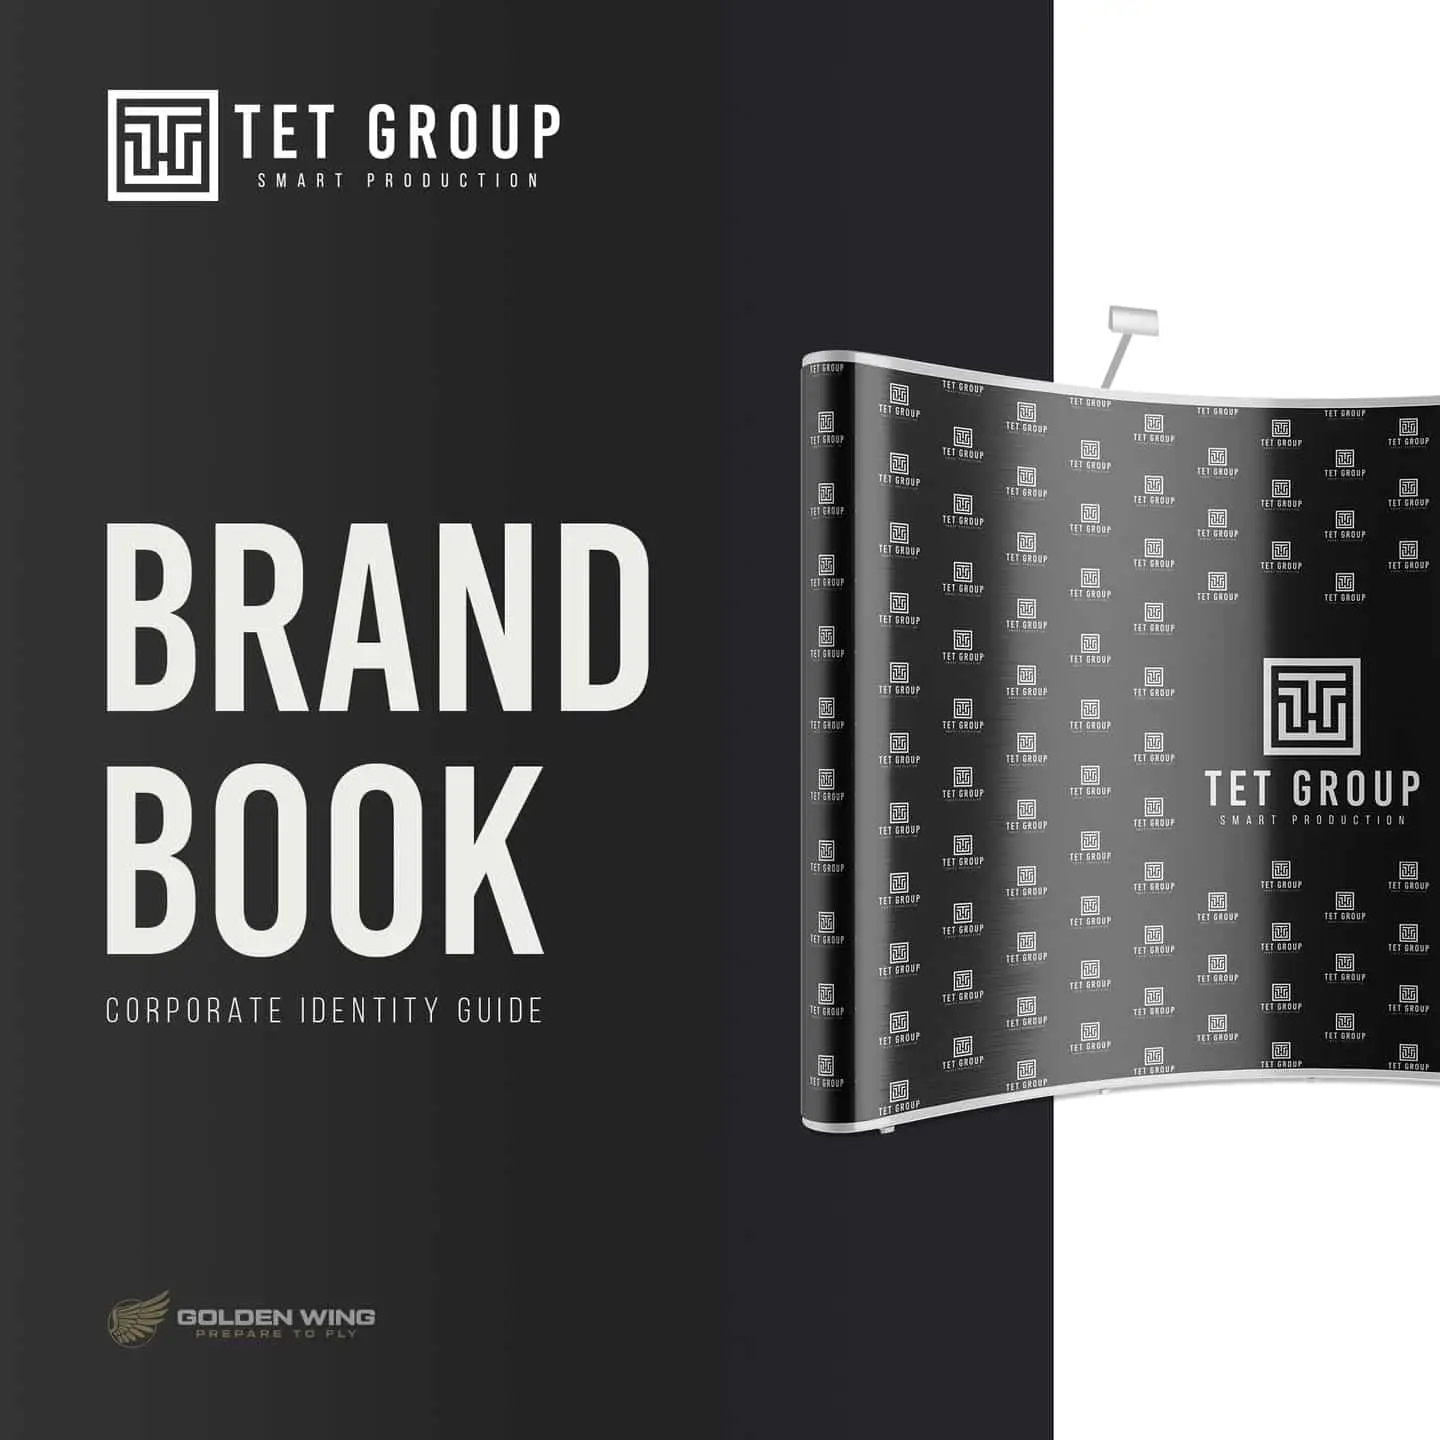 Markenhandbuch der TET Group, erstellt in Wien, zeigt digitales Marketing und Branding, ein Qualitätsprodukt von Golden Wing.